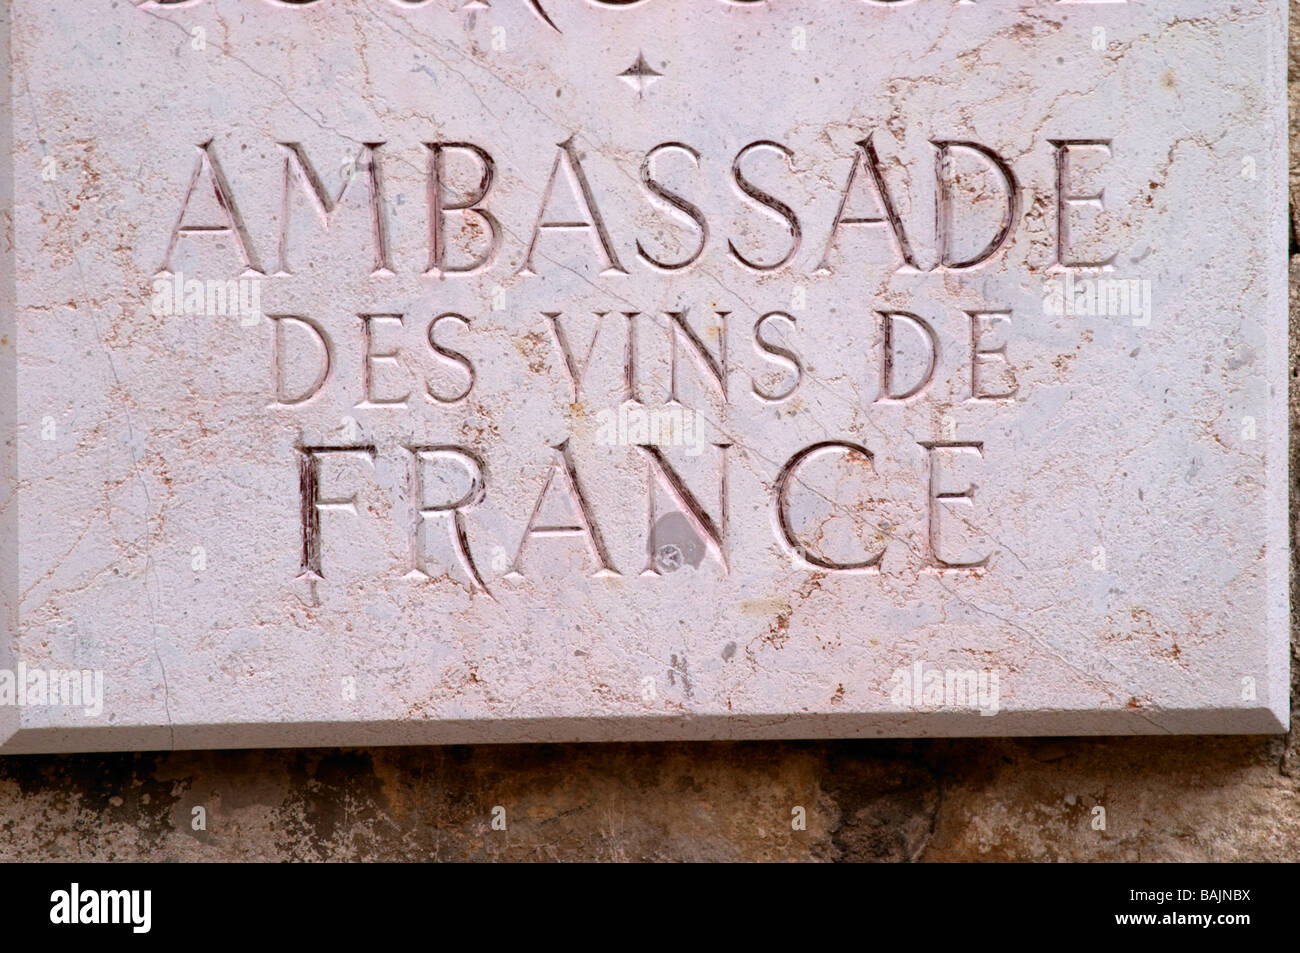 ambassade des vins de france wine museum beaune cote de beaune burgundy france Stock Photo